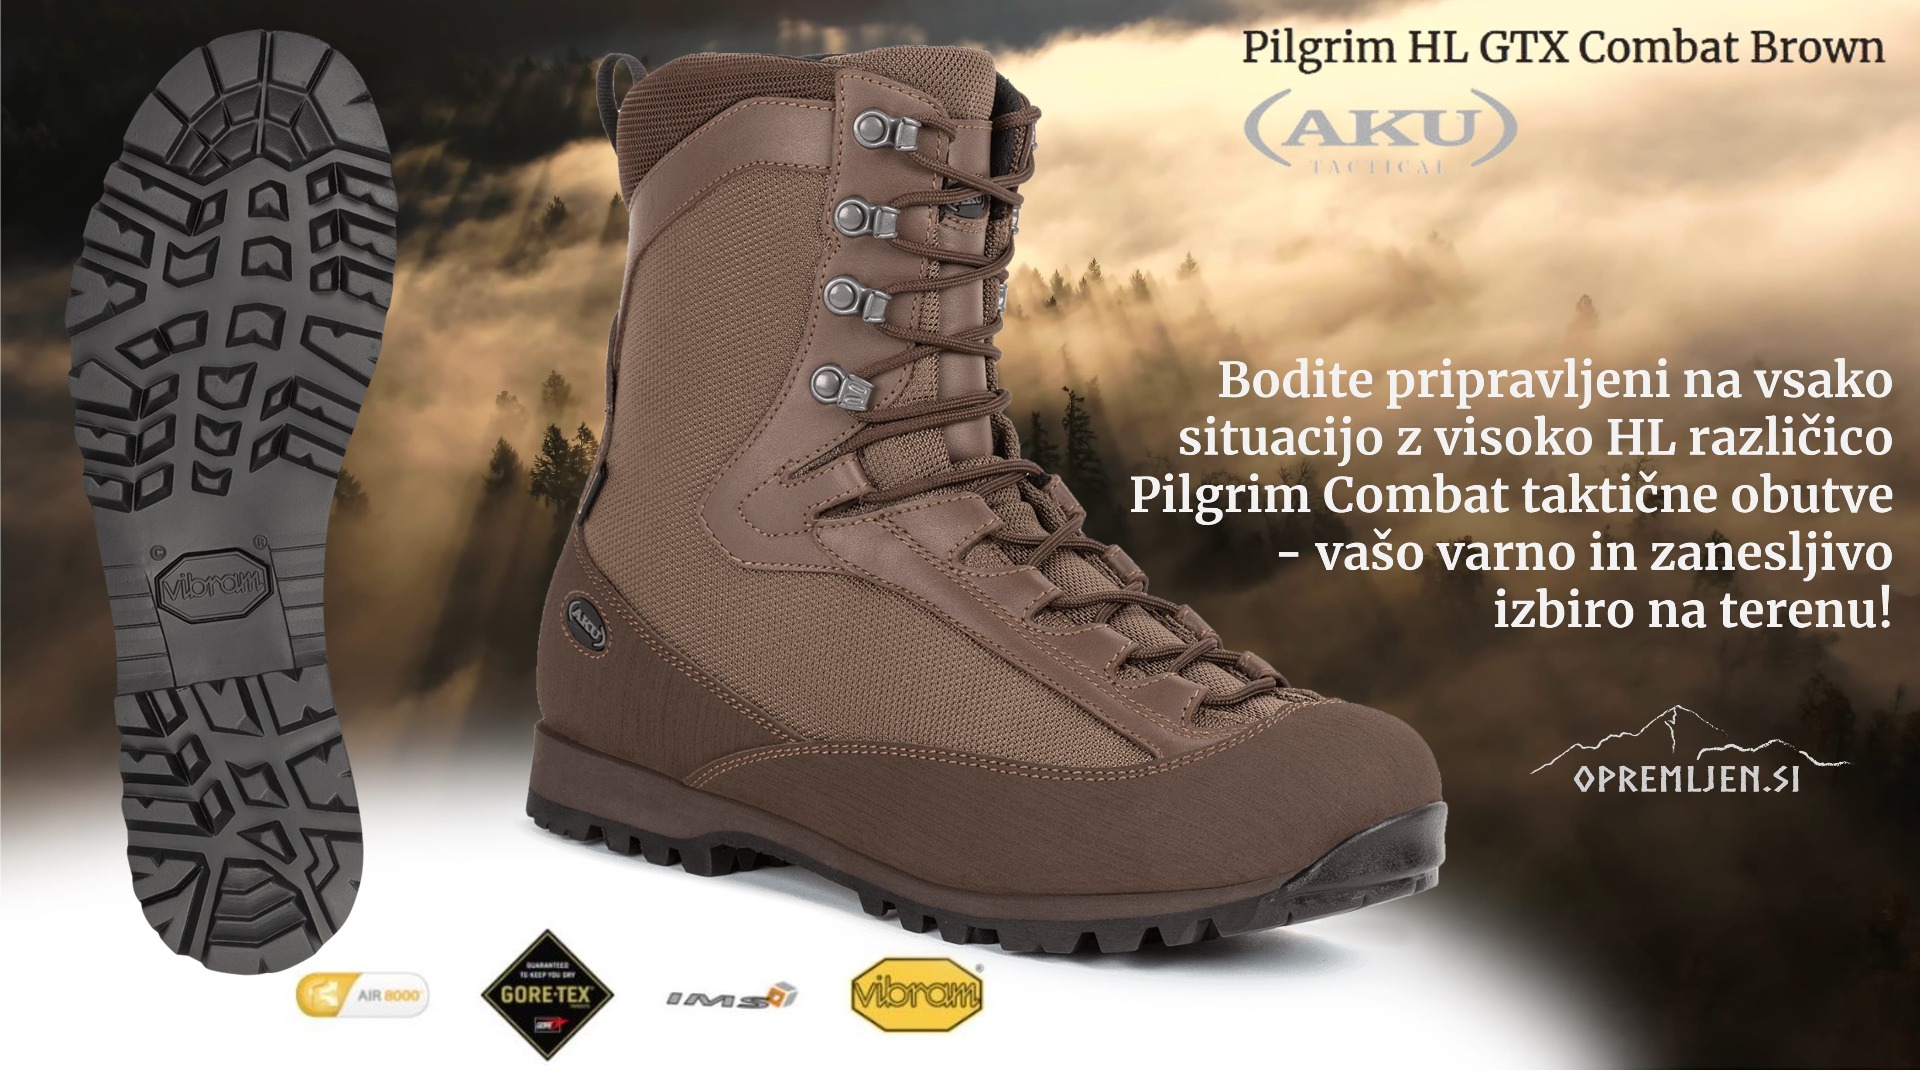 Pilgrim HL GTX Combat Brown - visoko zmogljiva vojaška obutev z Gore-Tex membrano za ekstremne bojne razmere. Kakovostna taktična obutev za vojaške operacije.